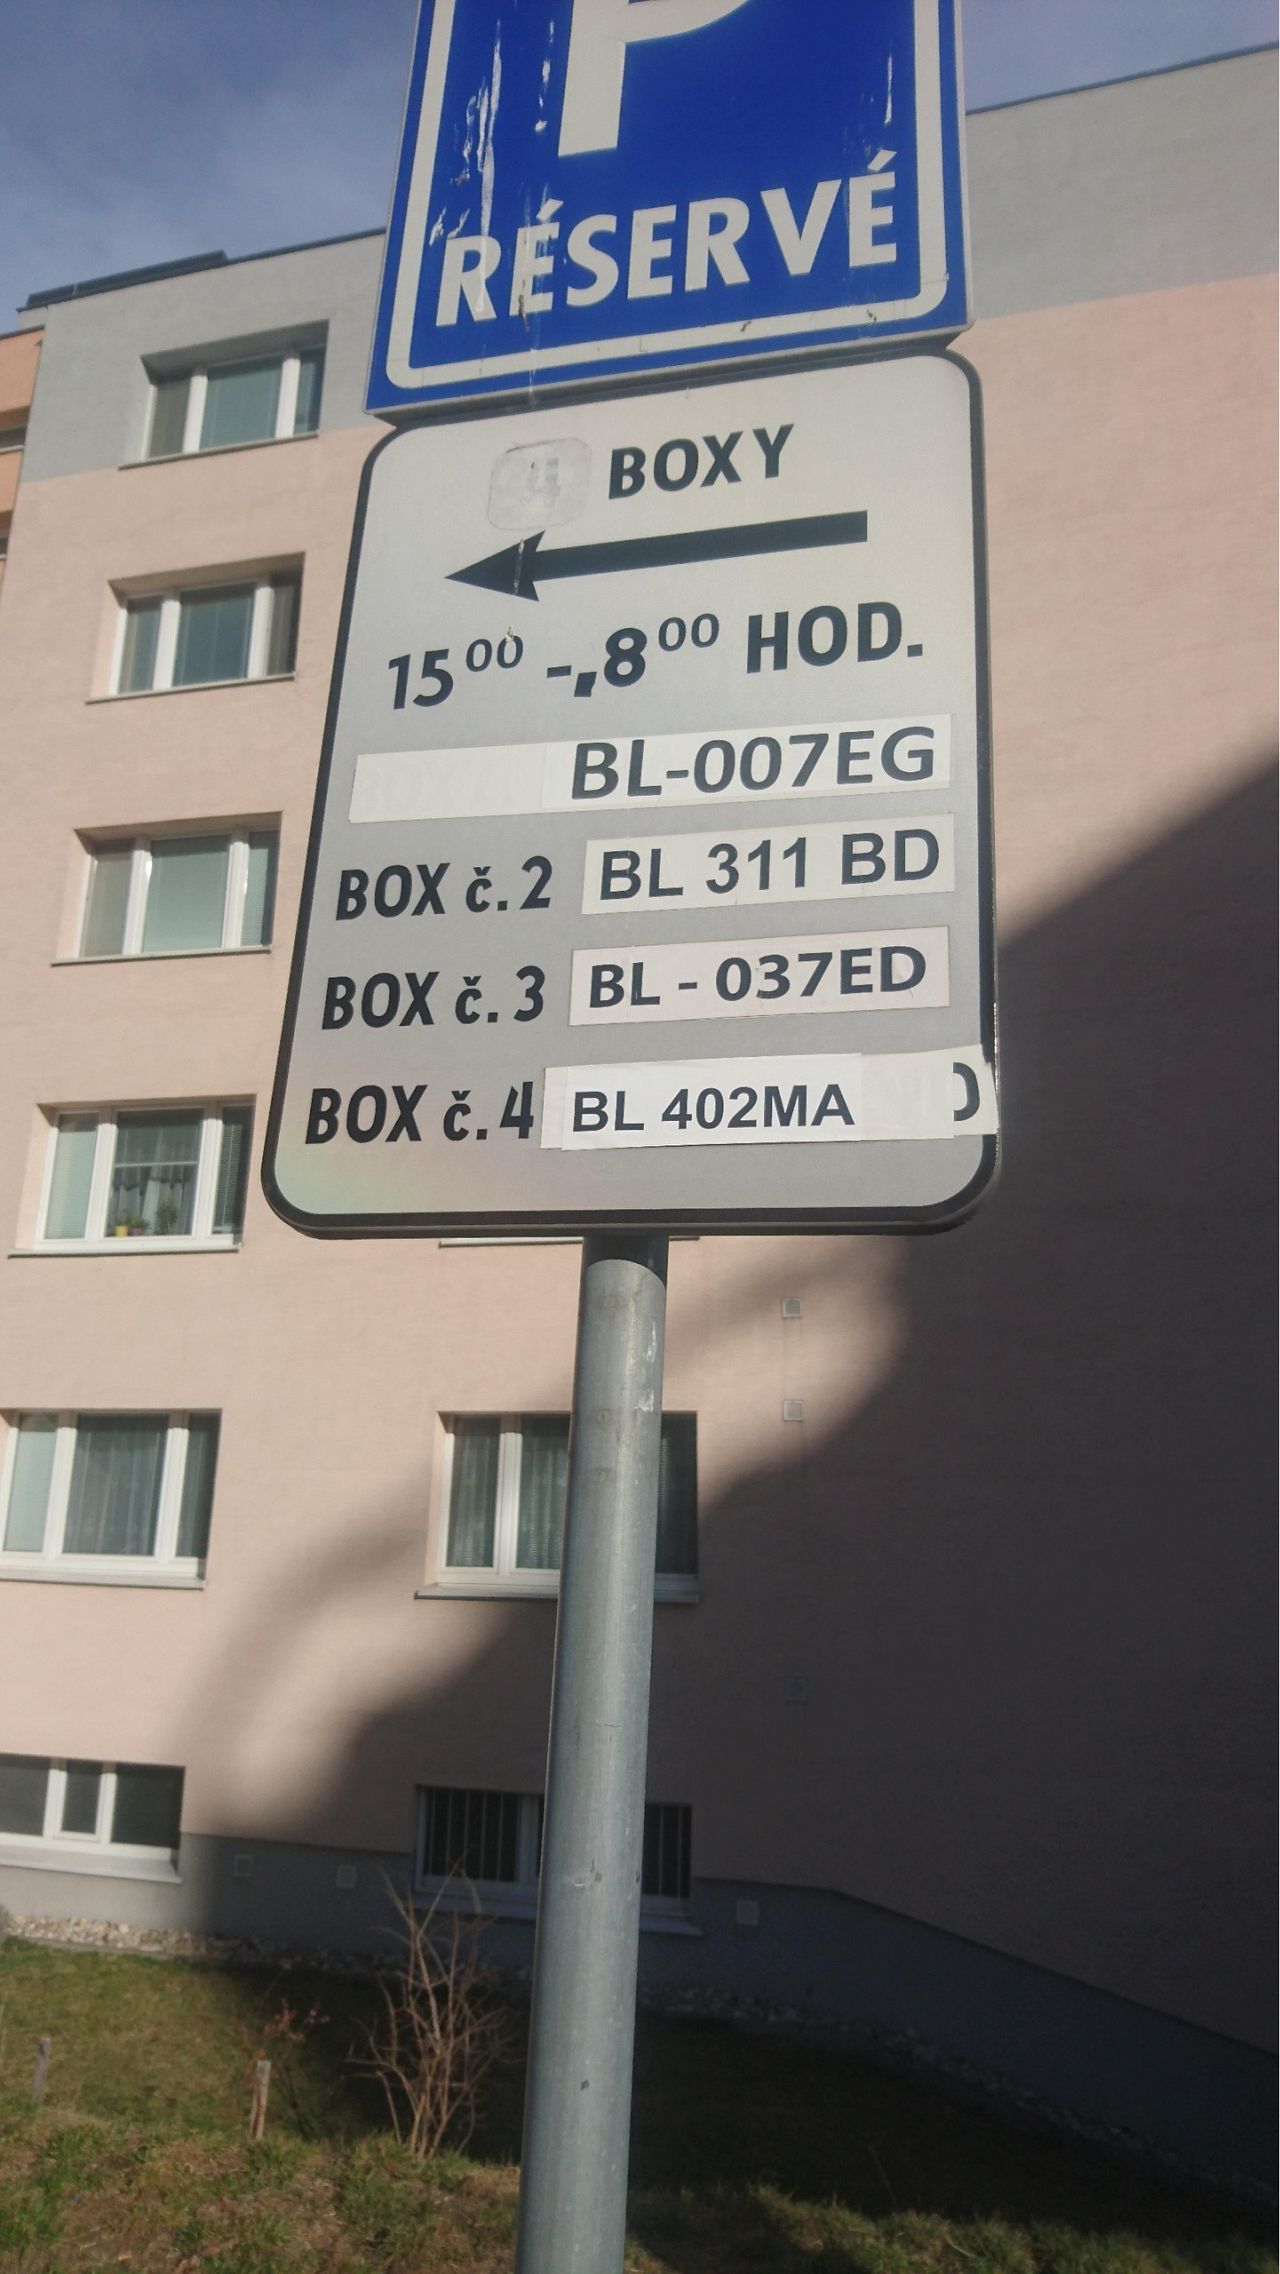 Neprehľadné vyhradené parkovanie na Ľ. Fullu 24, Karlova Ves, Bratislava |  Odkazprestarostu.sk